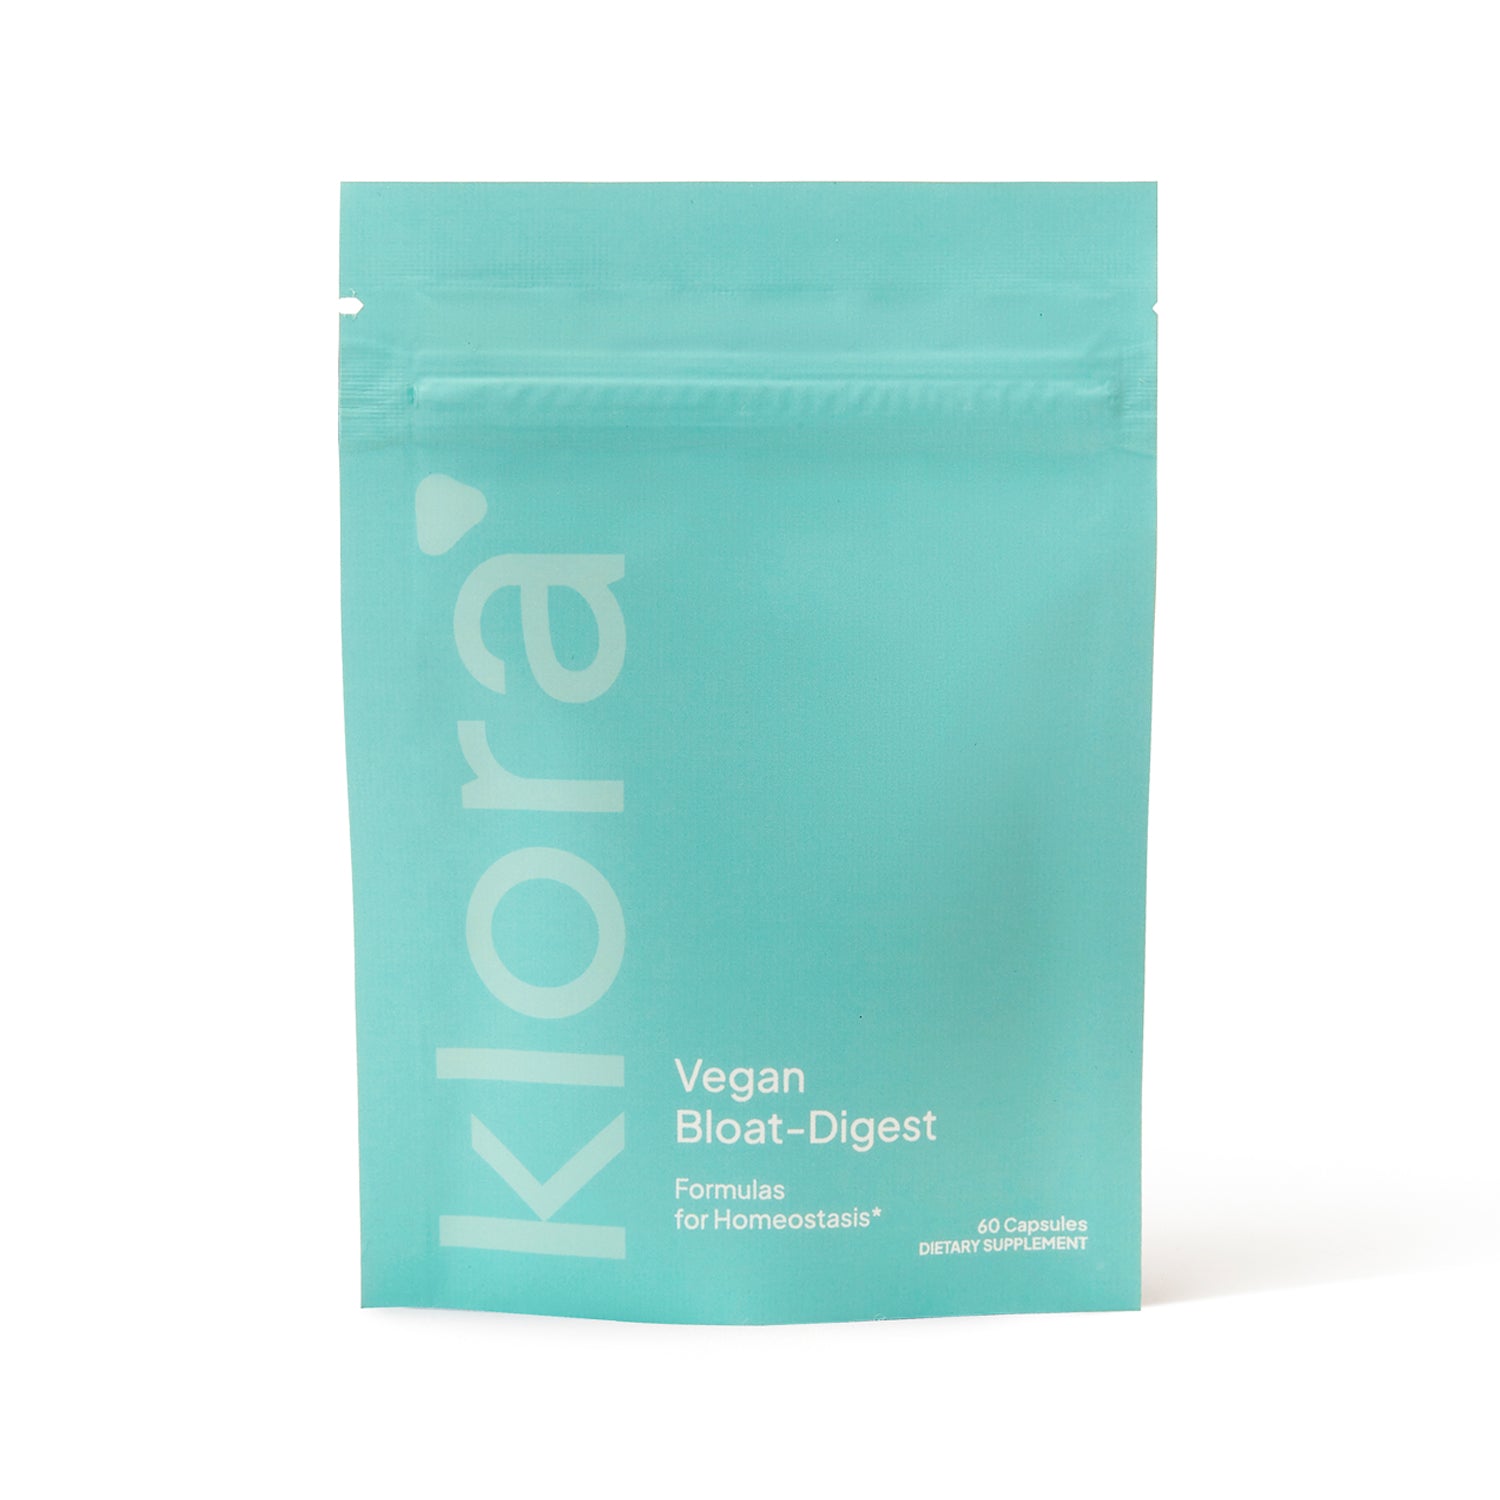 Bloat-Digest Vegan Capsule Pack Refill